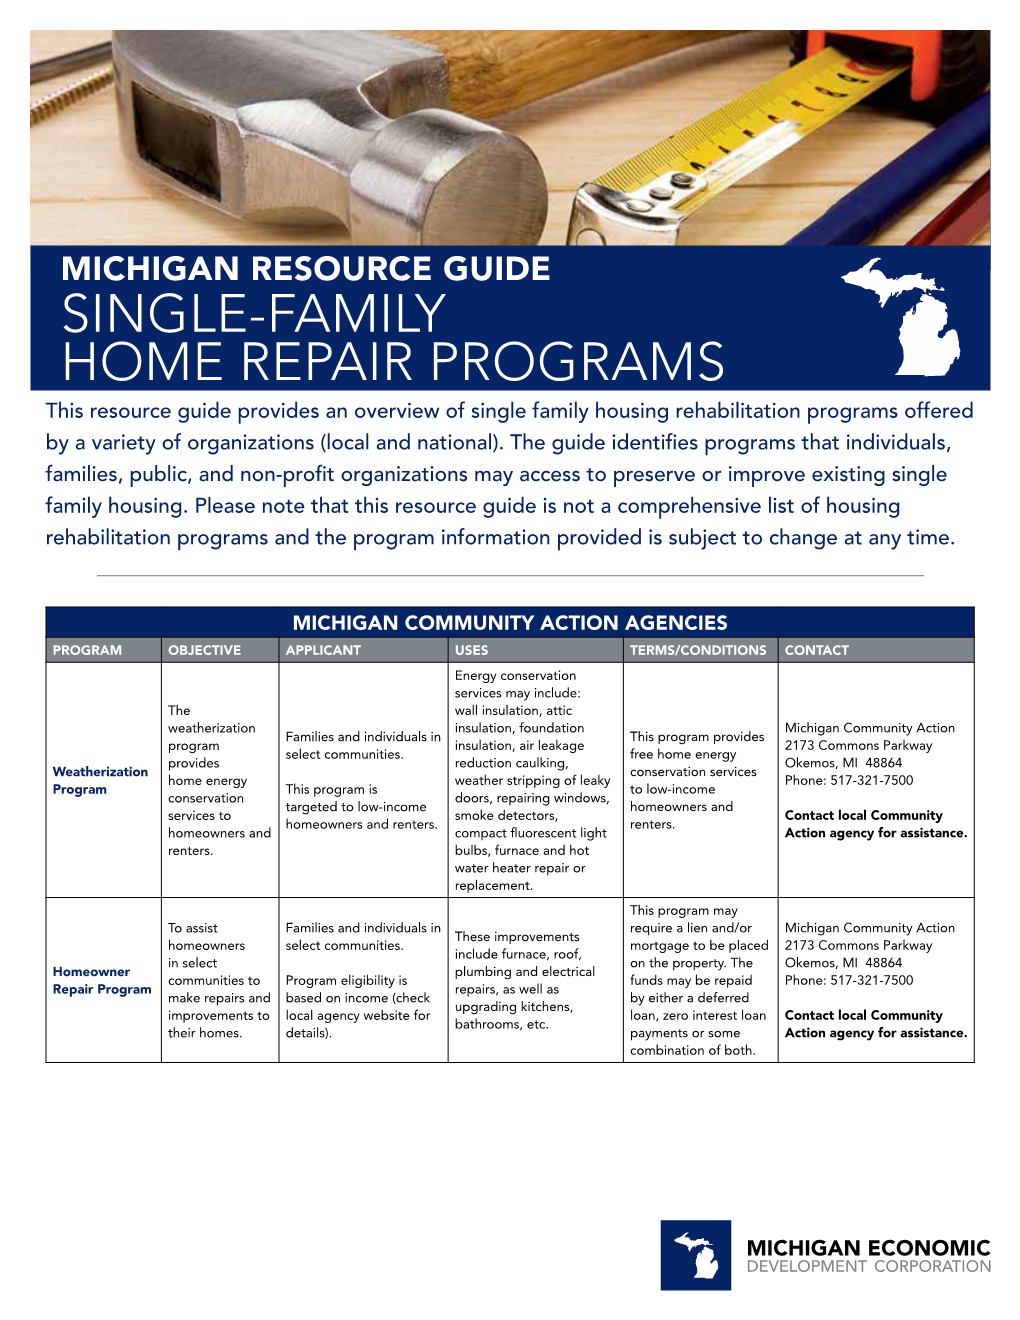 Michigan Resource Guide Single-Family Home Repair Programs